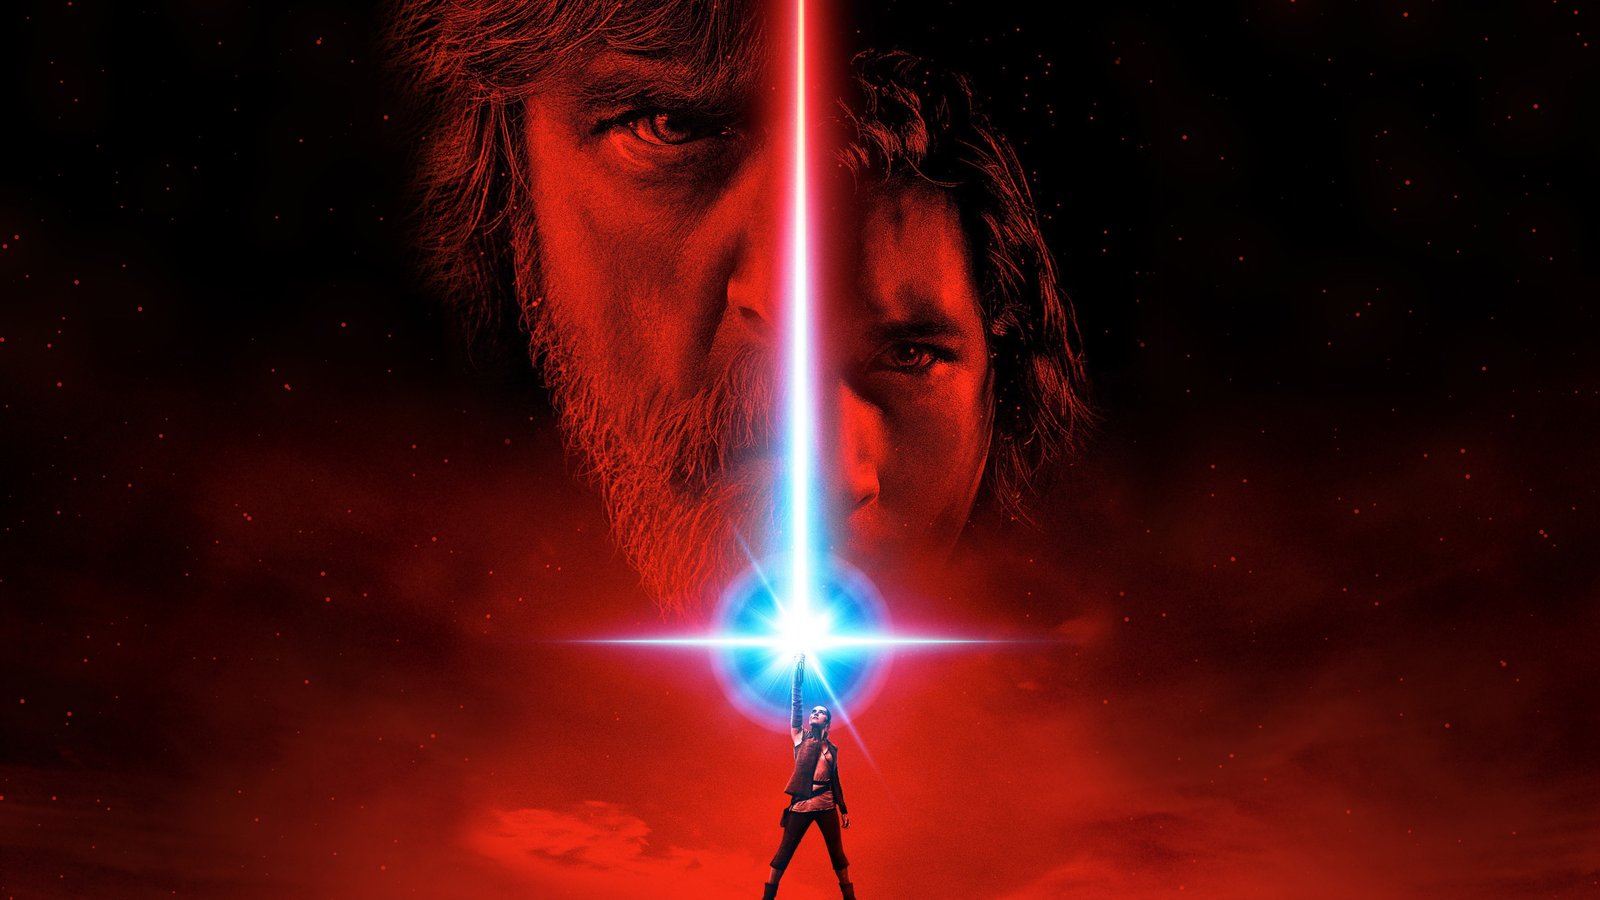 Σχολιασμός του νέου trailer του Star Wars: The Last Jedi!